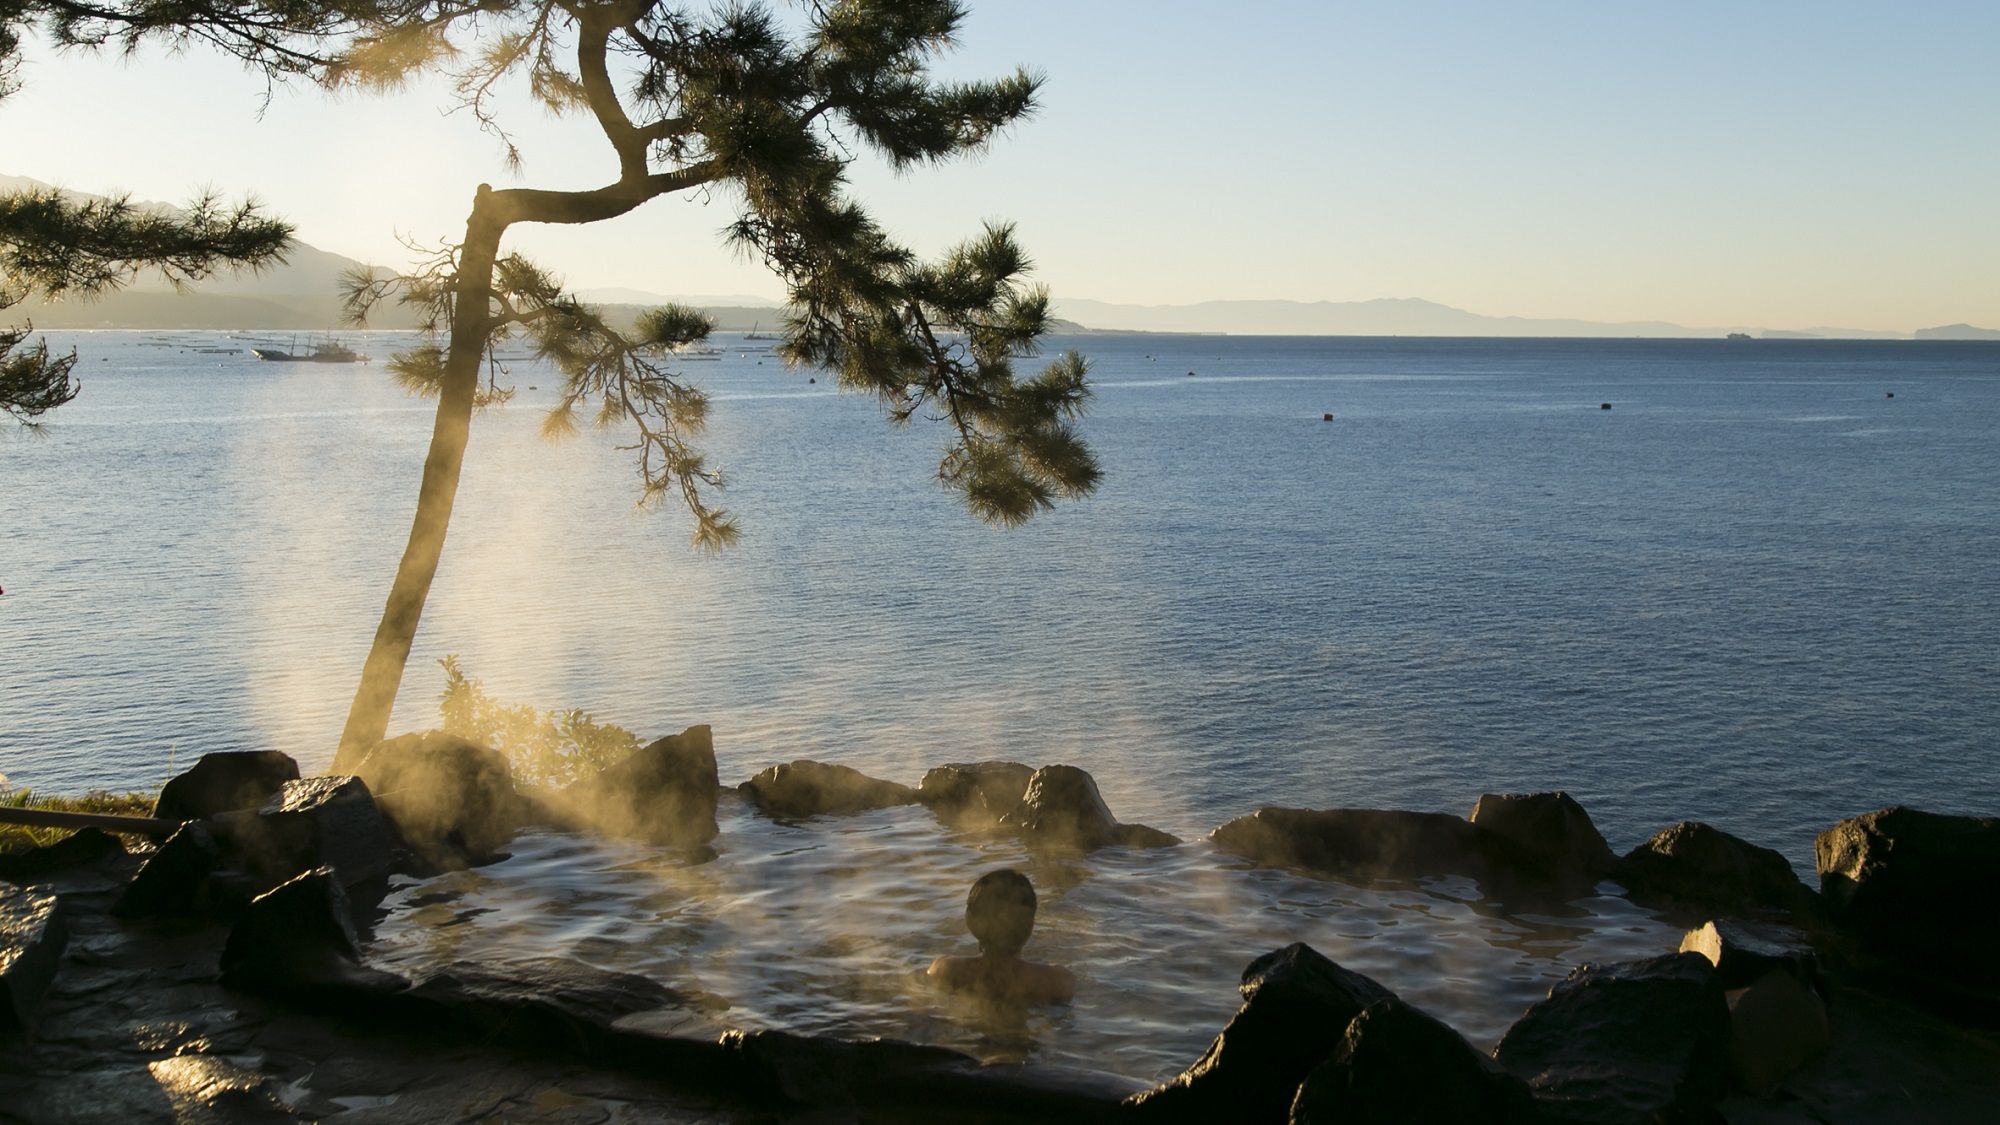 ☆【男性用露天風呂】錦江湾を眺めながら桜島が生む源泉をご堪能下さい。